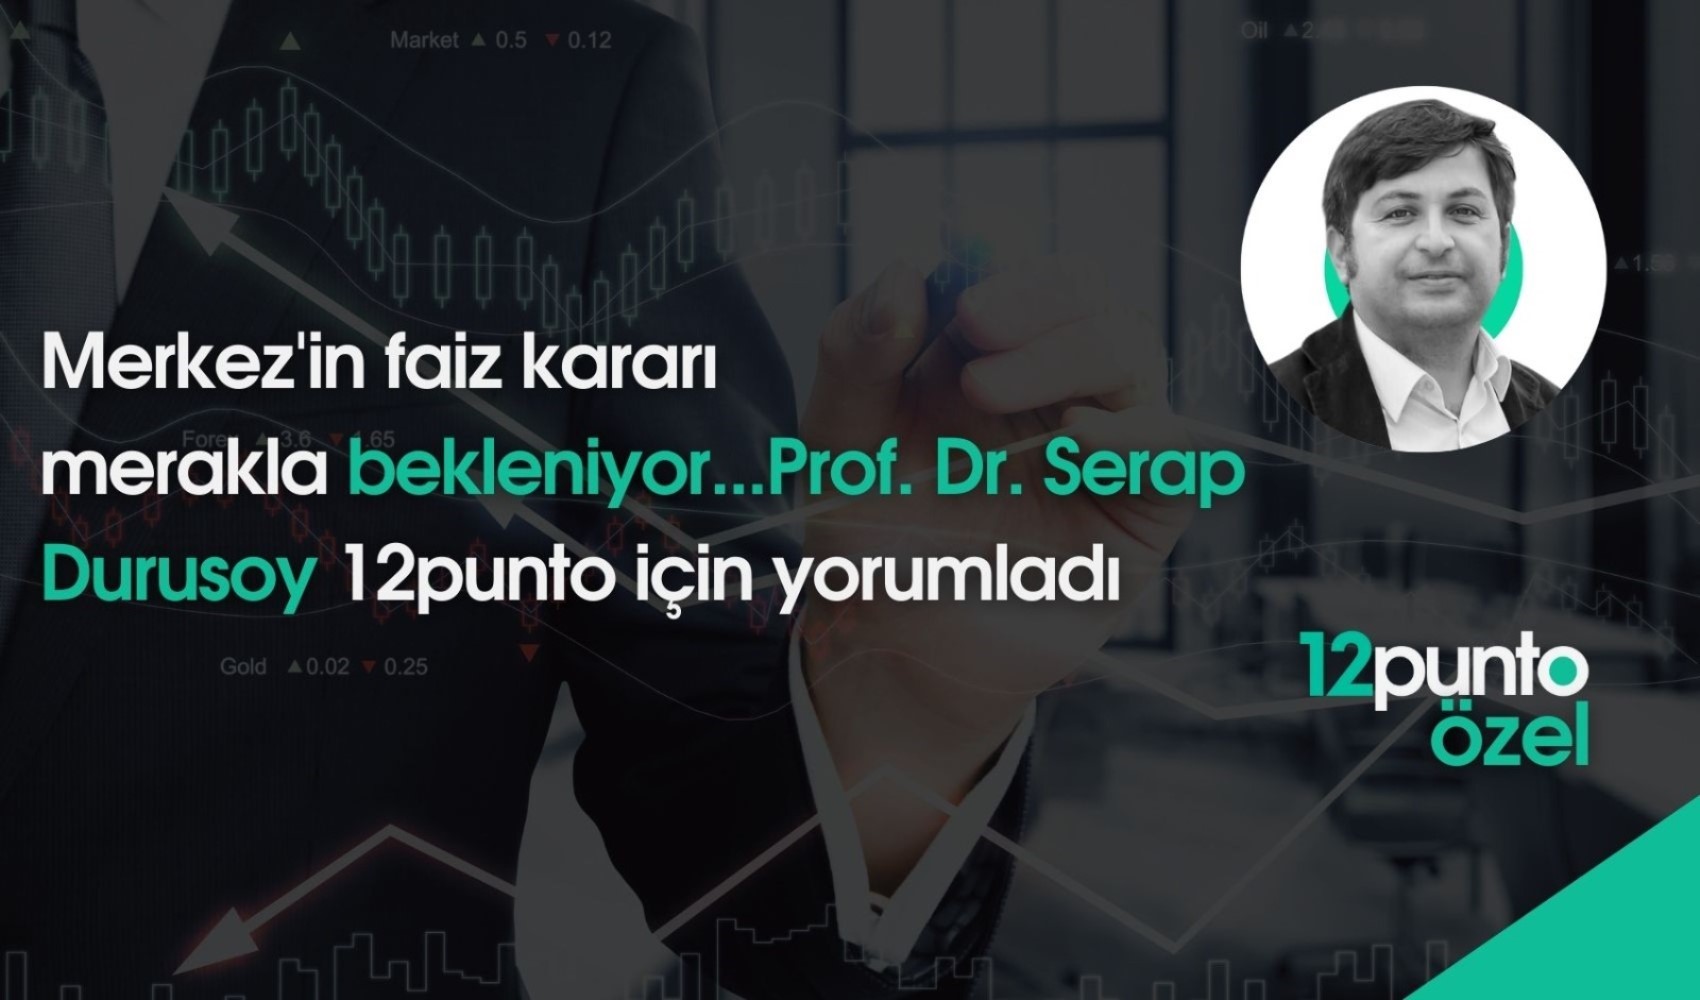 Merkez'in faiz kararı merakla bekleniyor... Prof. Dr. Serap Durusoy 12punto için yorumladı